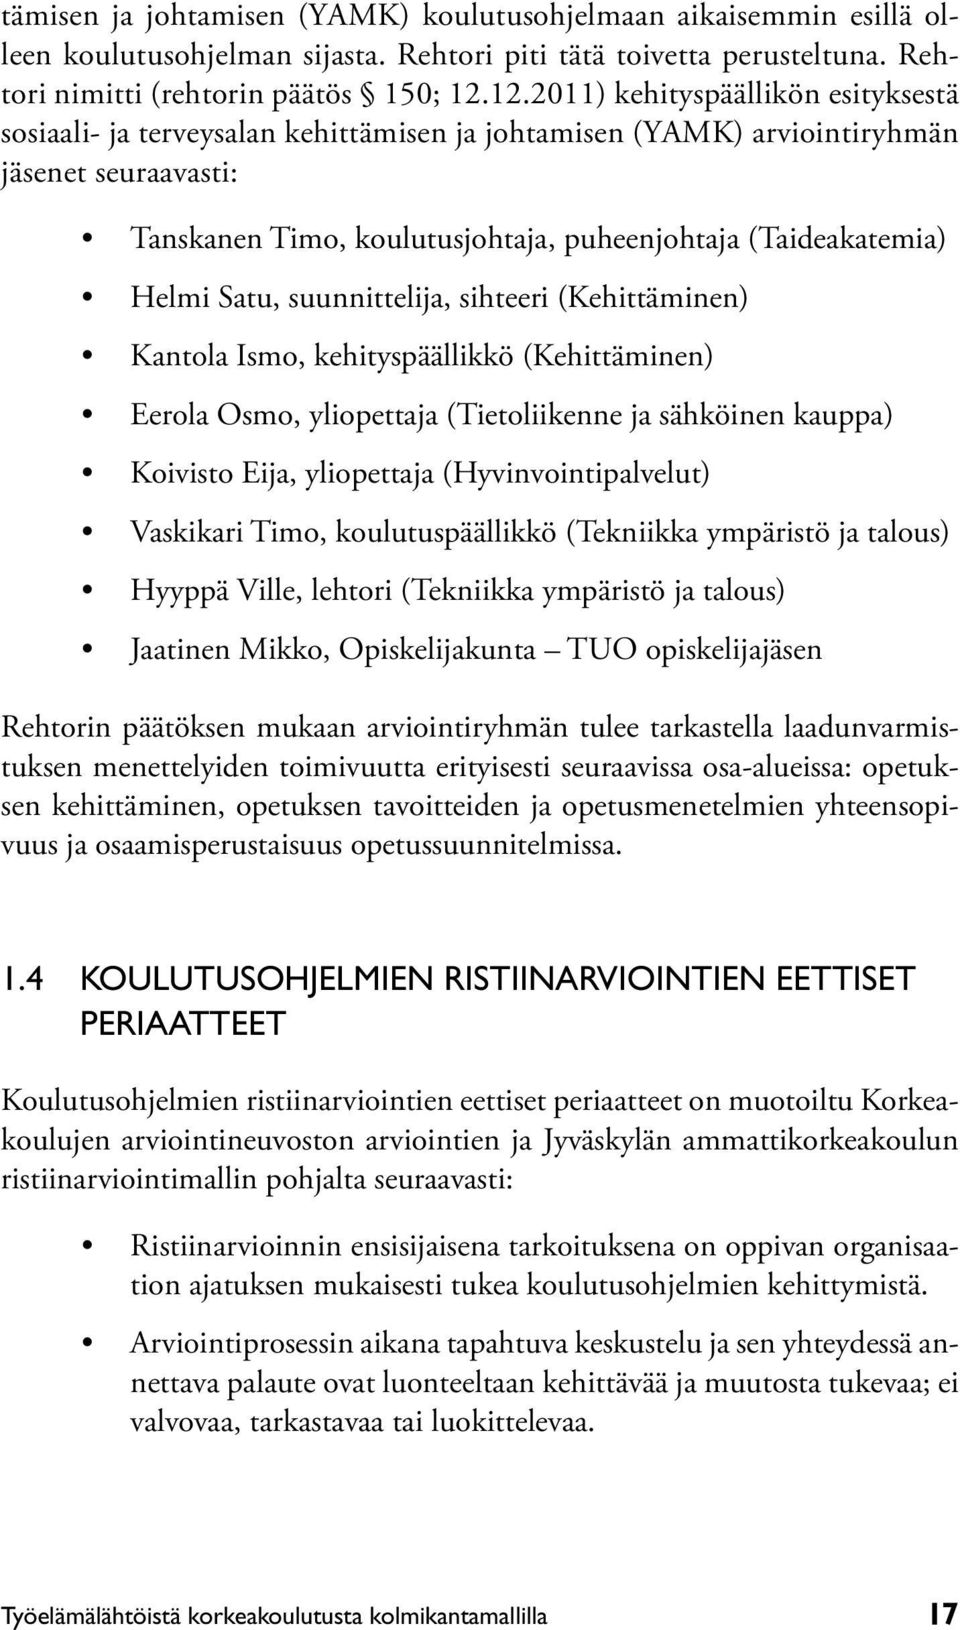 Helmi Satu, suunnittelija, sihteeri (Kehittäminen) Kantola Ismo, kehityspäällikkö (Kehittäminen) Eerola Osmo, yliopettaja (Tietoliikenne ja sähköinen kauppa) Koivisto Eija, yliopettaja